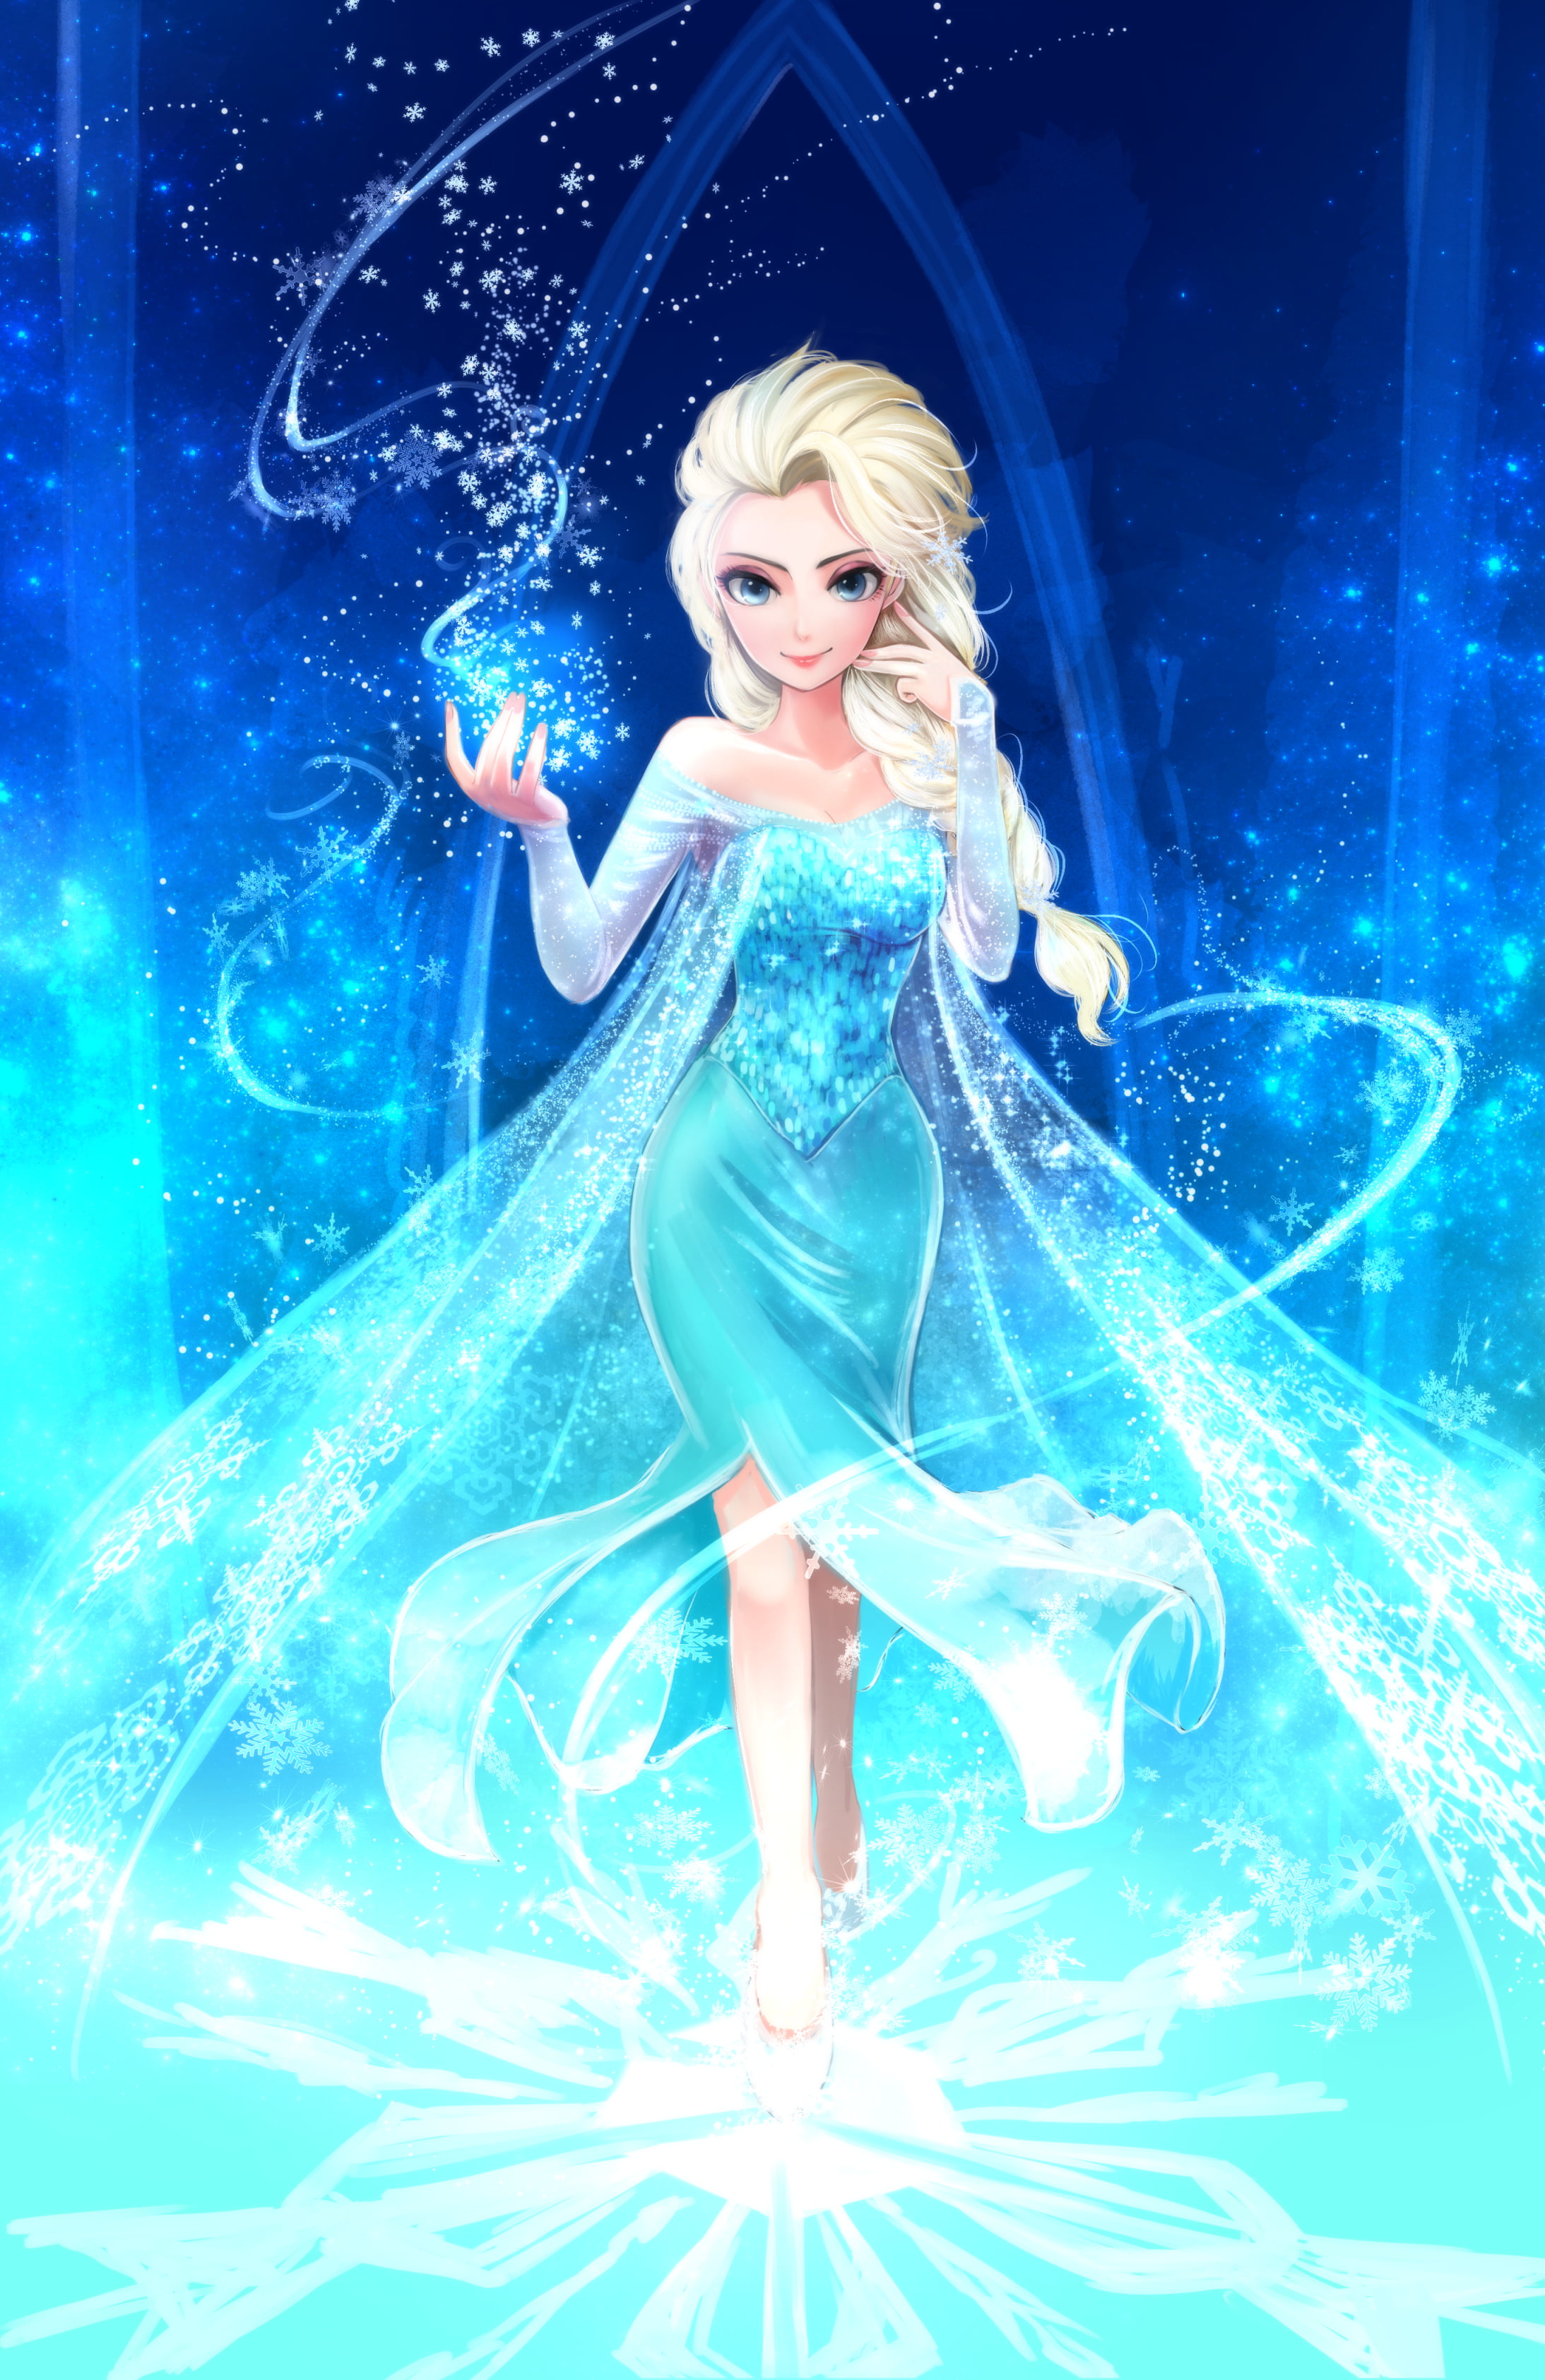 cartoon, Frozen (movie), fan art, Princess Elsa, women, one person